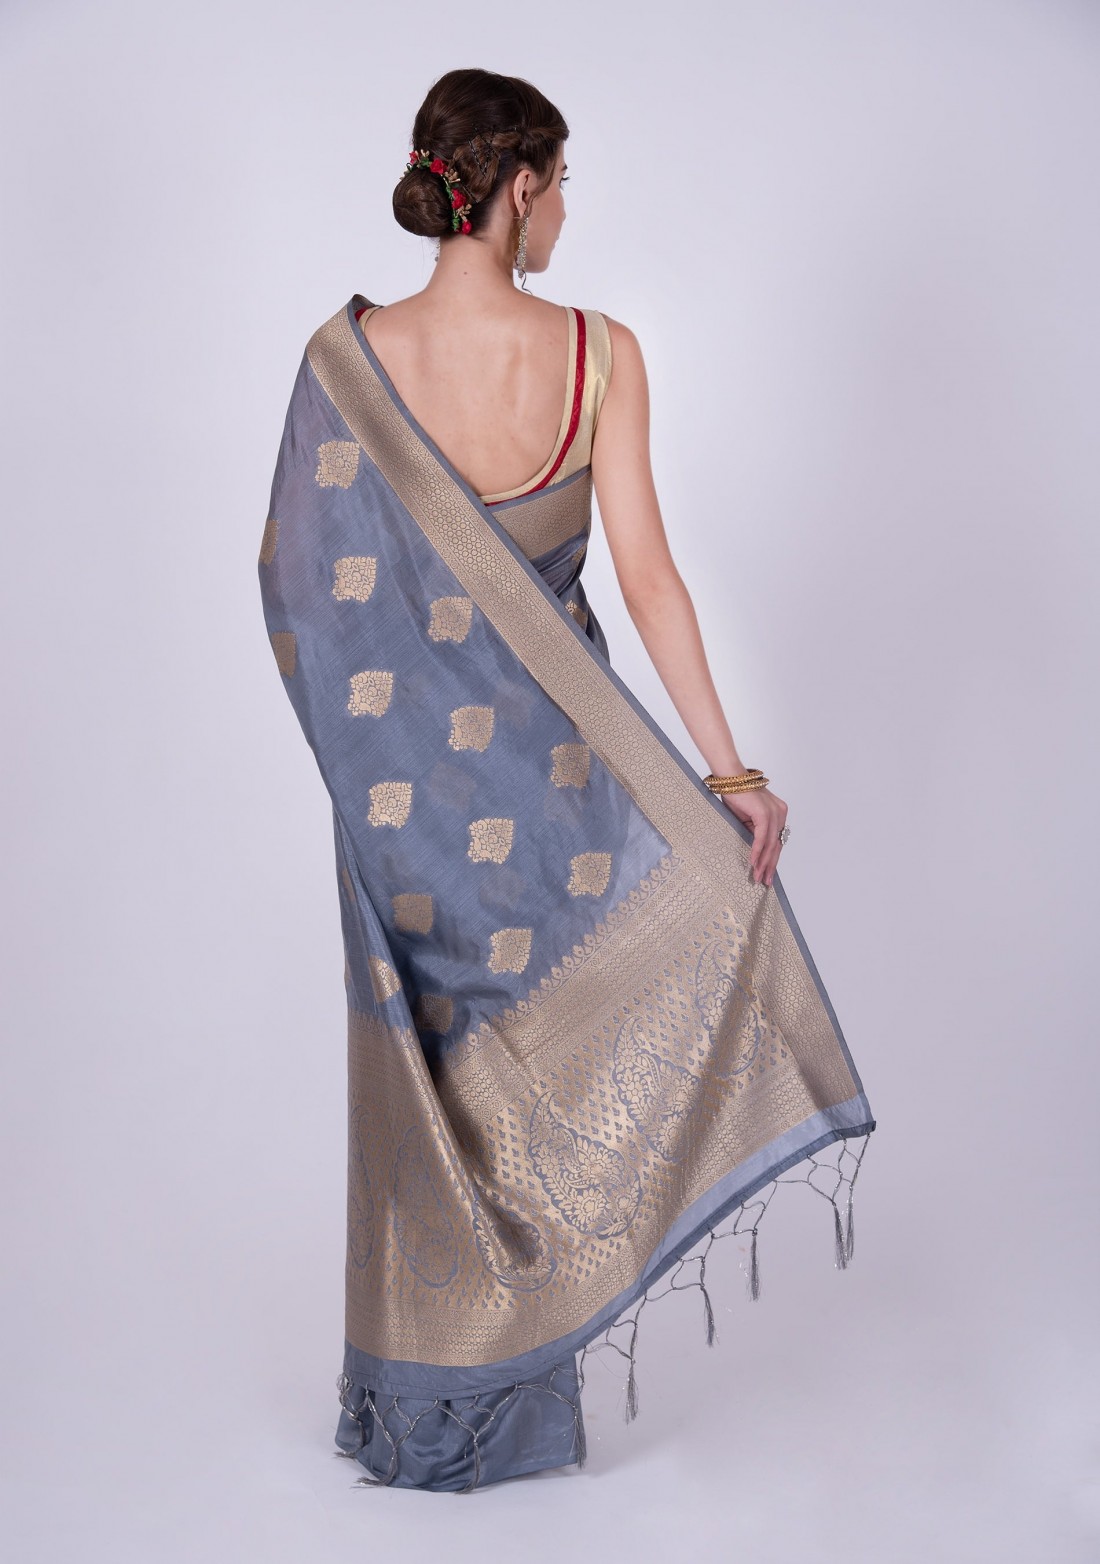 Designer Grey & Golden Banarasi Silk Saree